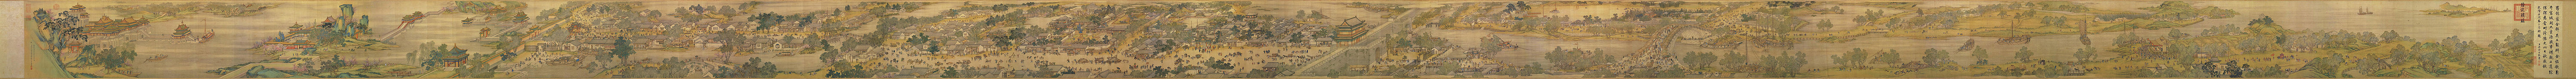 Panorama aus der Qingming-Rolle, aus dem 18.Jahrhundert als Neuauflage eines Originals aus dem 12.Jahrhundert von Zhang Zeduan